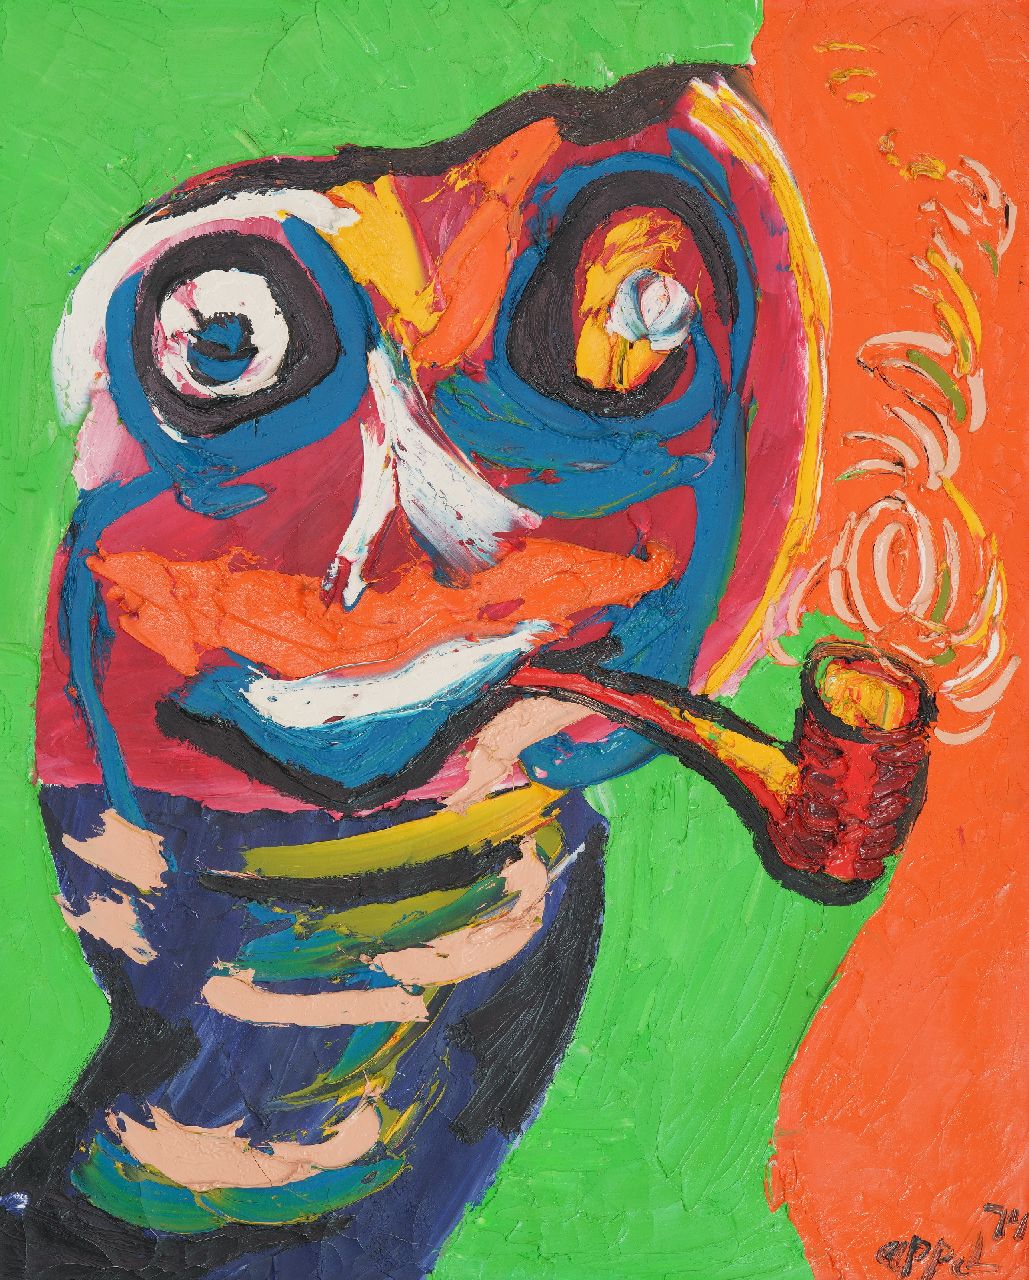 Appel C.K.  | Christiaan 'Karel' Appel | Schilderijen te koop aangeboden | Femme à la pipe (ode aan Van Gogh met pijp), olieverf op doek 100,2 x 80,8 cm, gesigneerd rechtsonder en gedateerd '74  niet meer beschikbaar